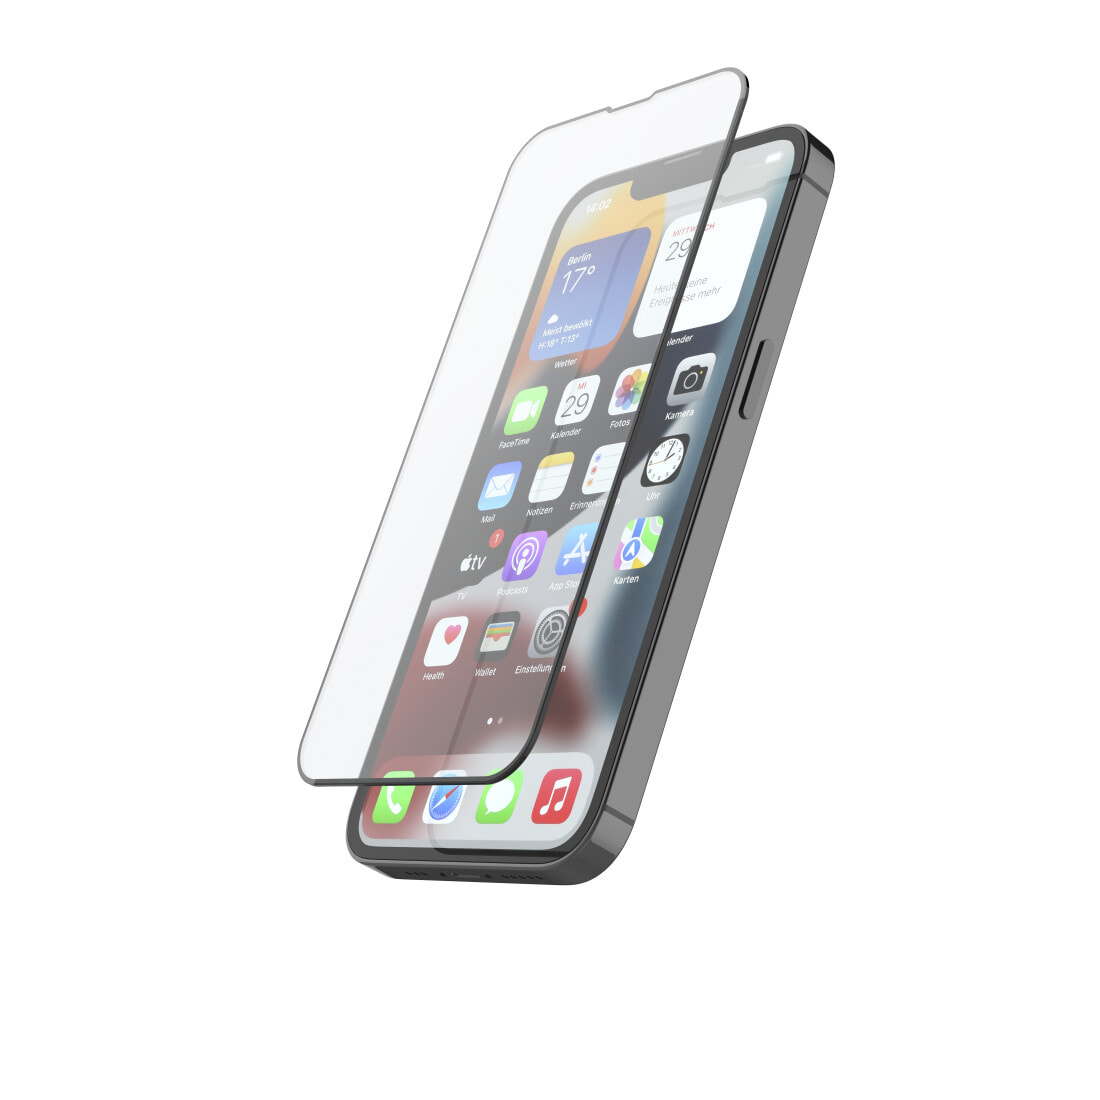 Hama 00216350 защитная пленка / стекло для мобильного телефона Прозрачная защитная пленка Apple 1 шт